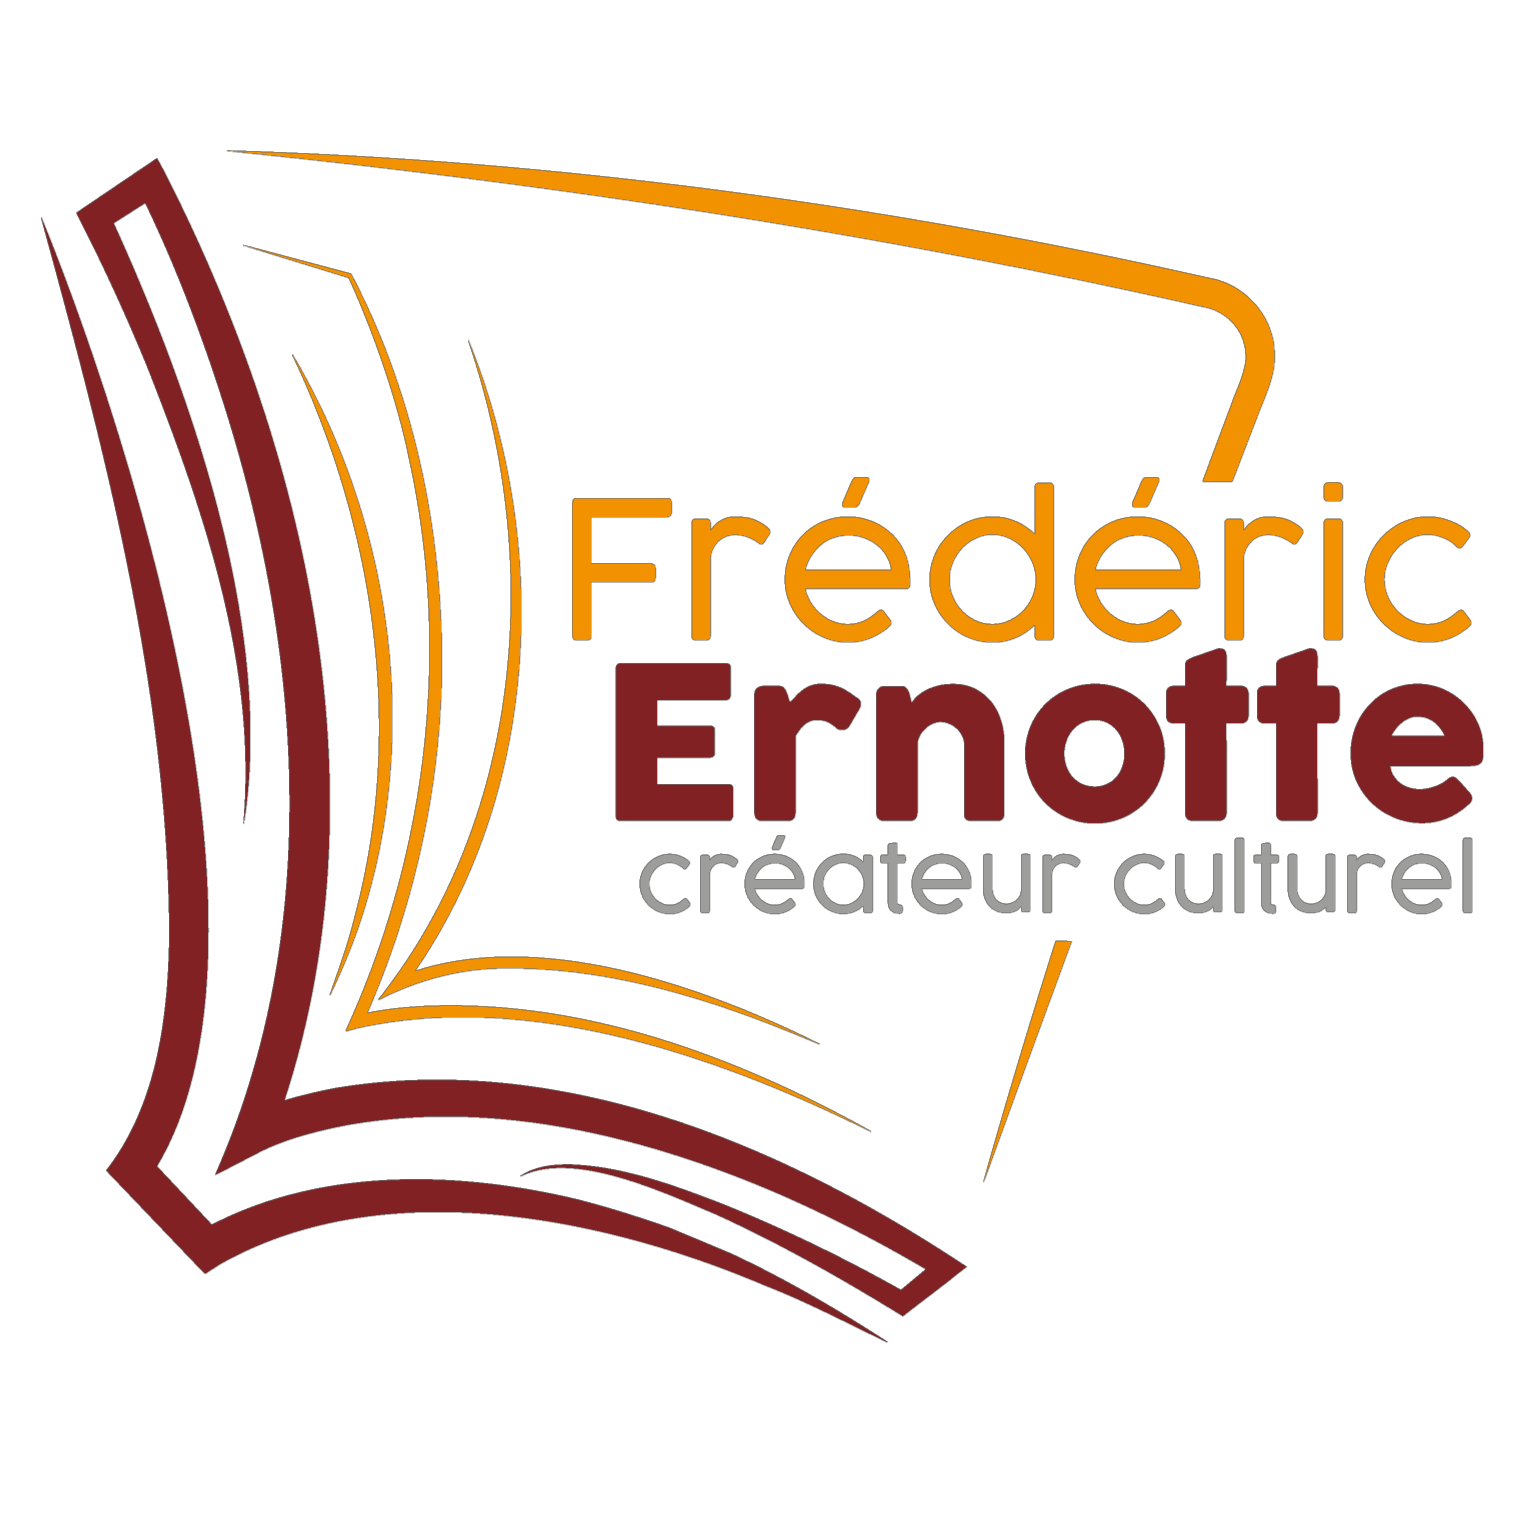 Frédéric Ernotte